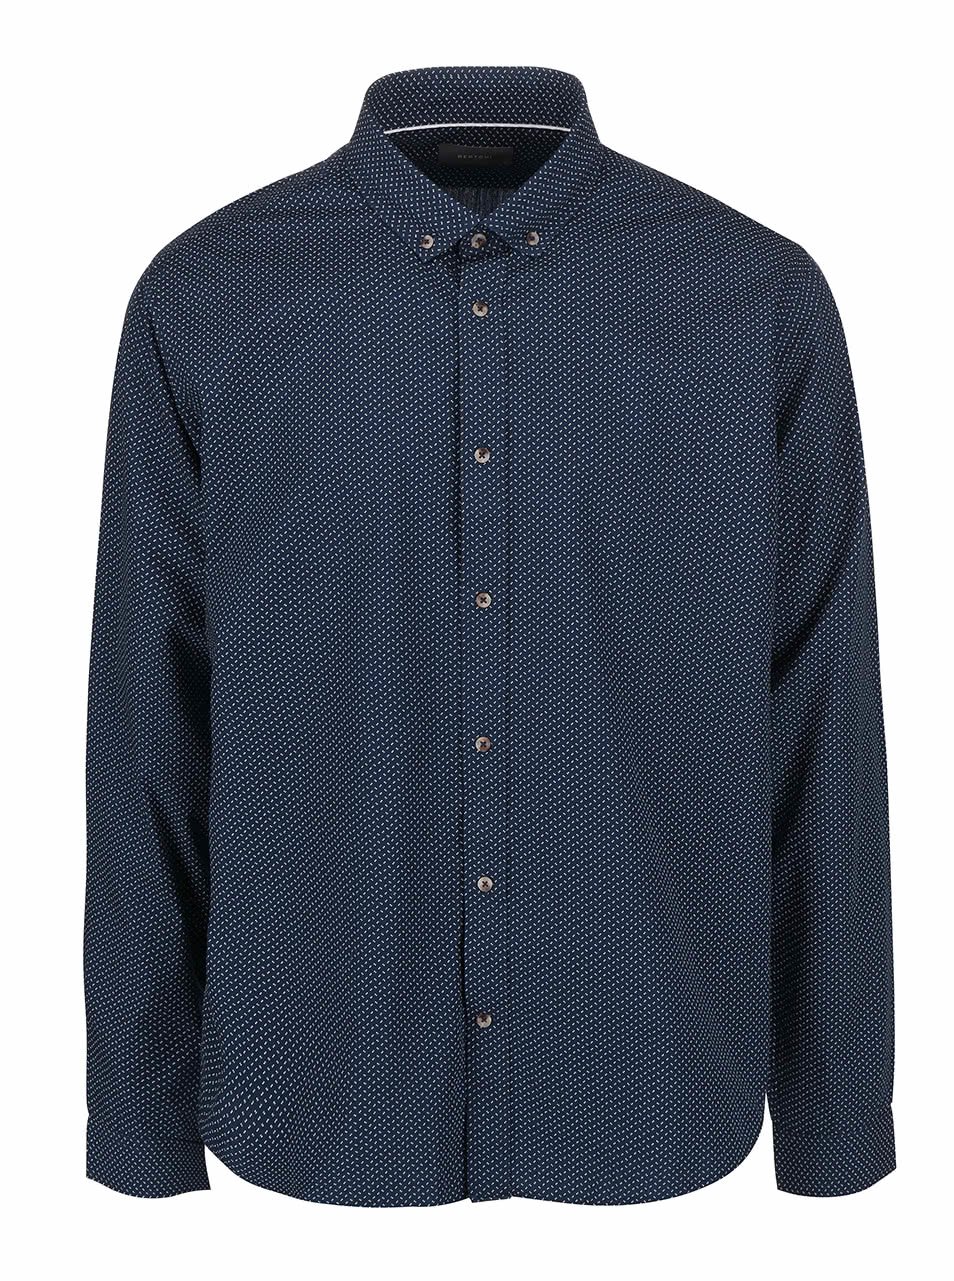 Tmavě modrá košile s drobným bílým vzorem Bertoni Malte